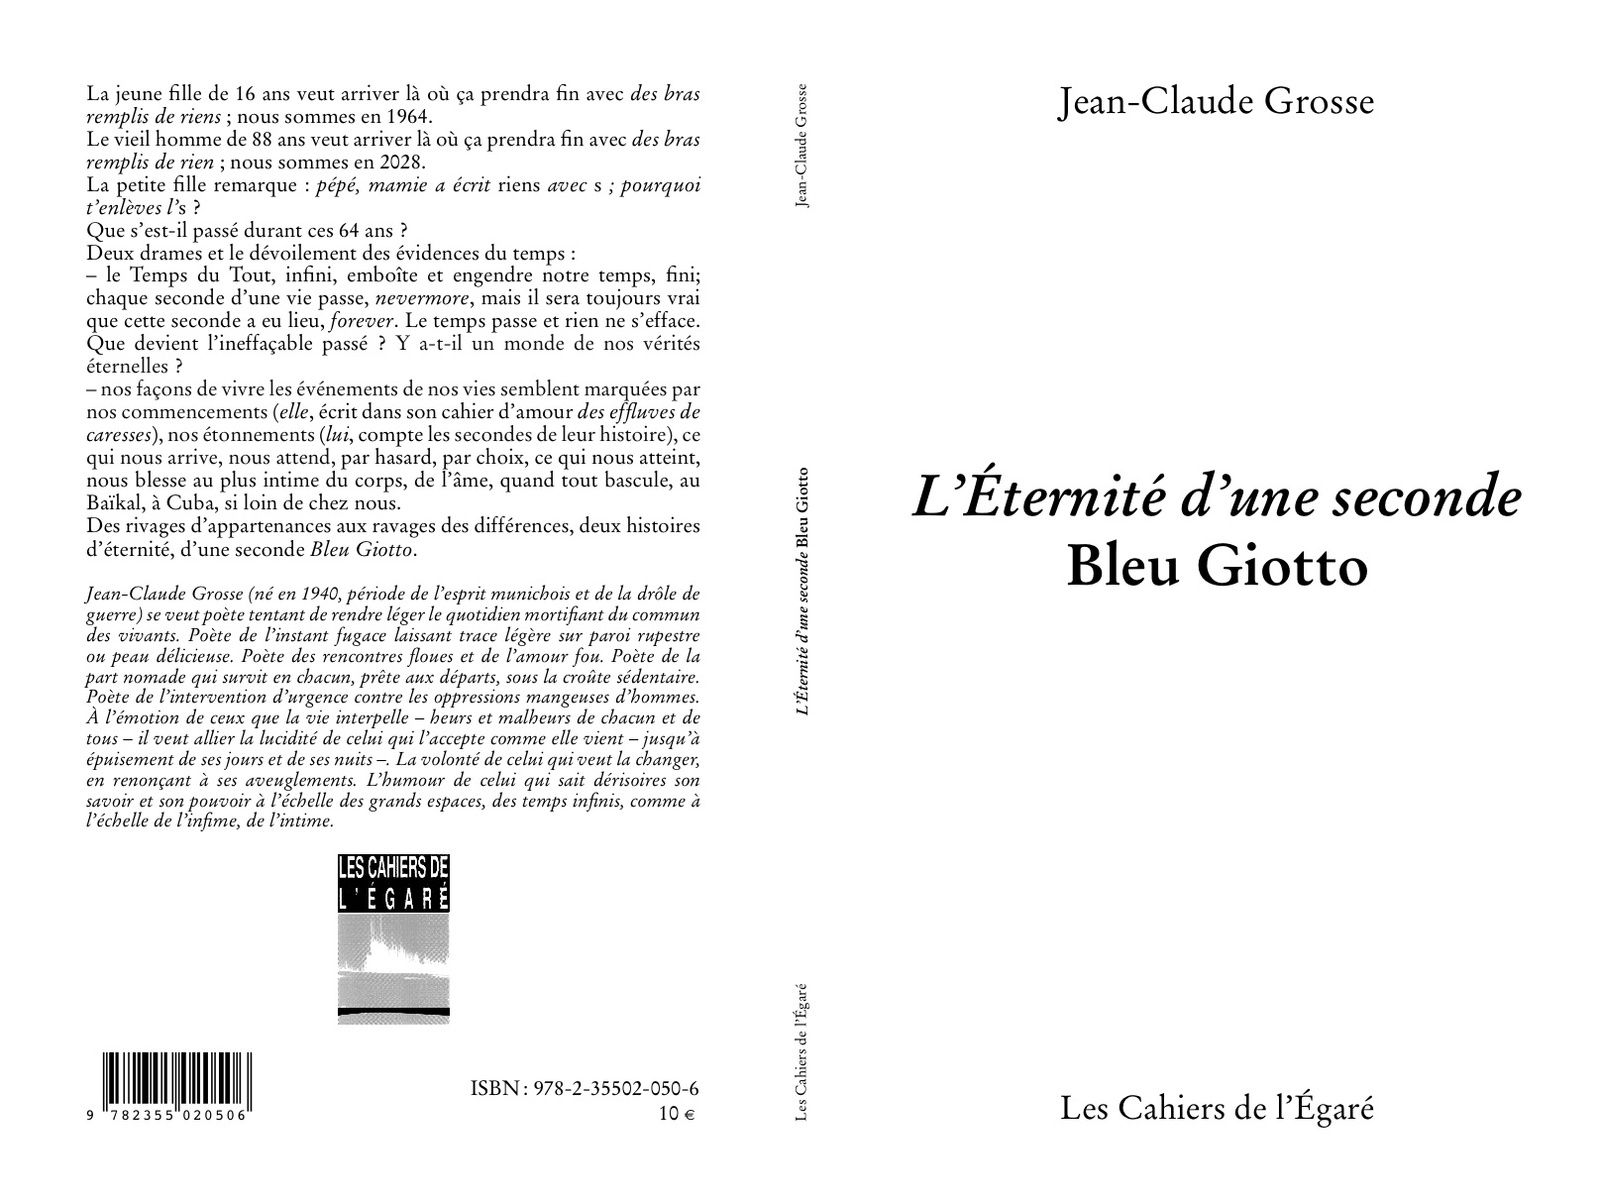 dans le sillage de Baïkala, testament amoureux de JCG (août 2010), réalisé par A.B. en dentelles végétales; L'éternité d'une seconde Bleu Giotto, sur la perte du fils (2001), sur la perte de l'épousée (2010)